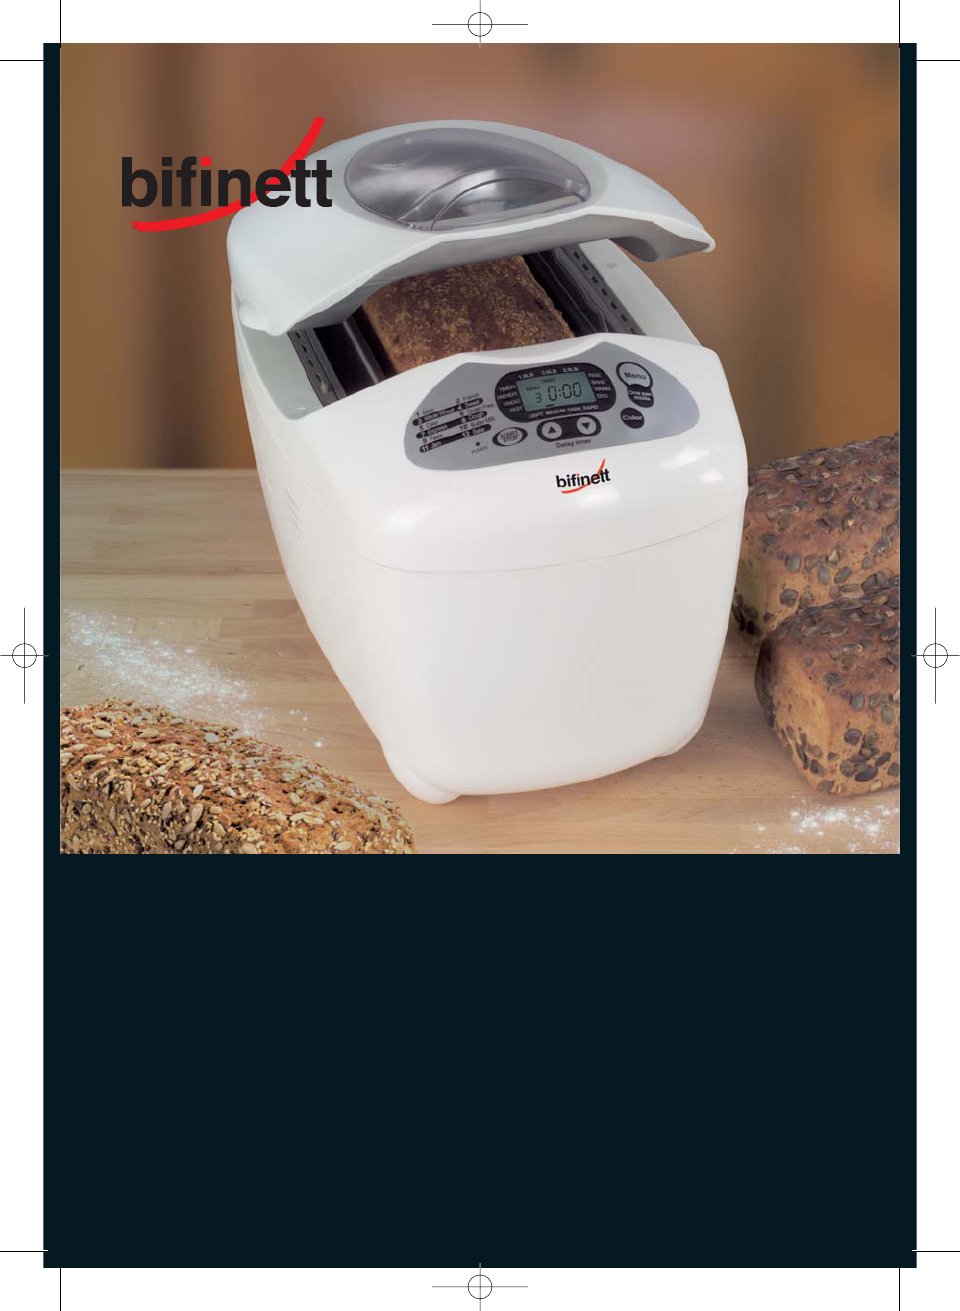 Choose 1 or 2 Bifinett Bread Maker Kneading Paddle for Model KH2232 